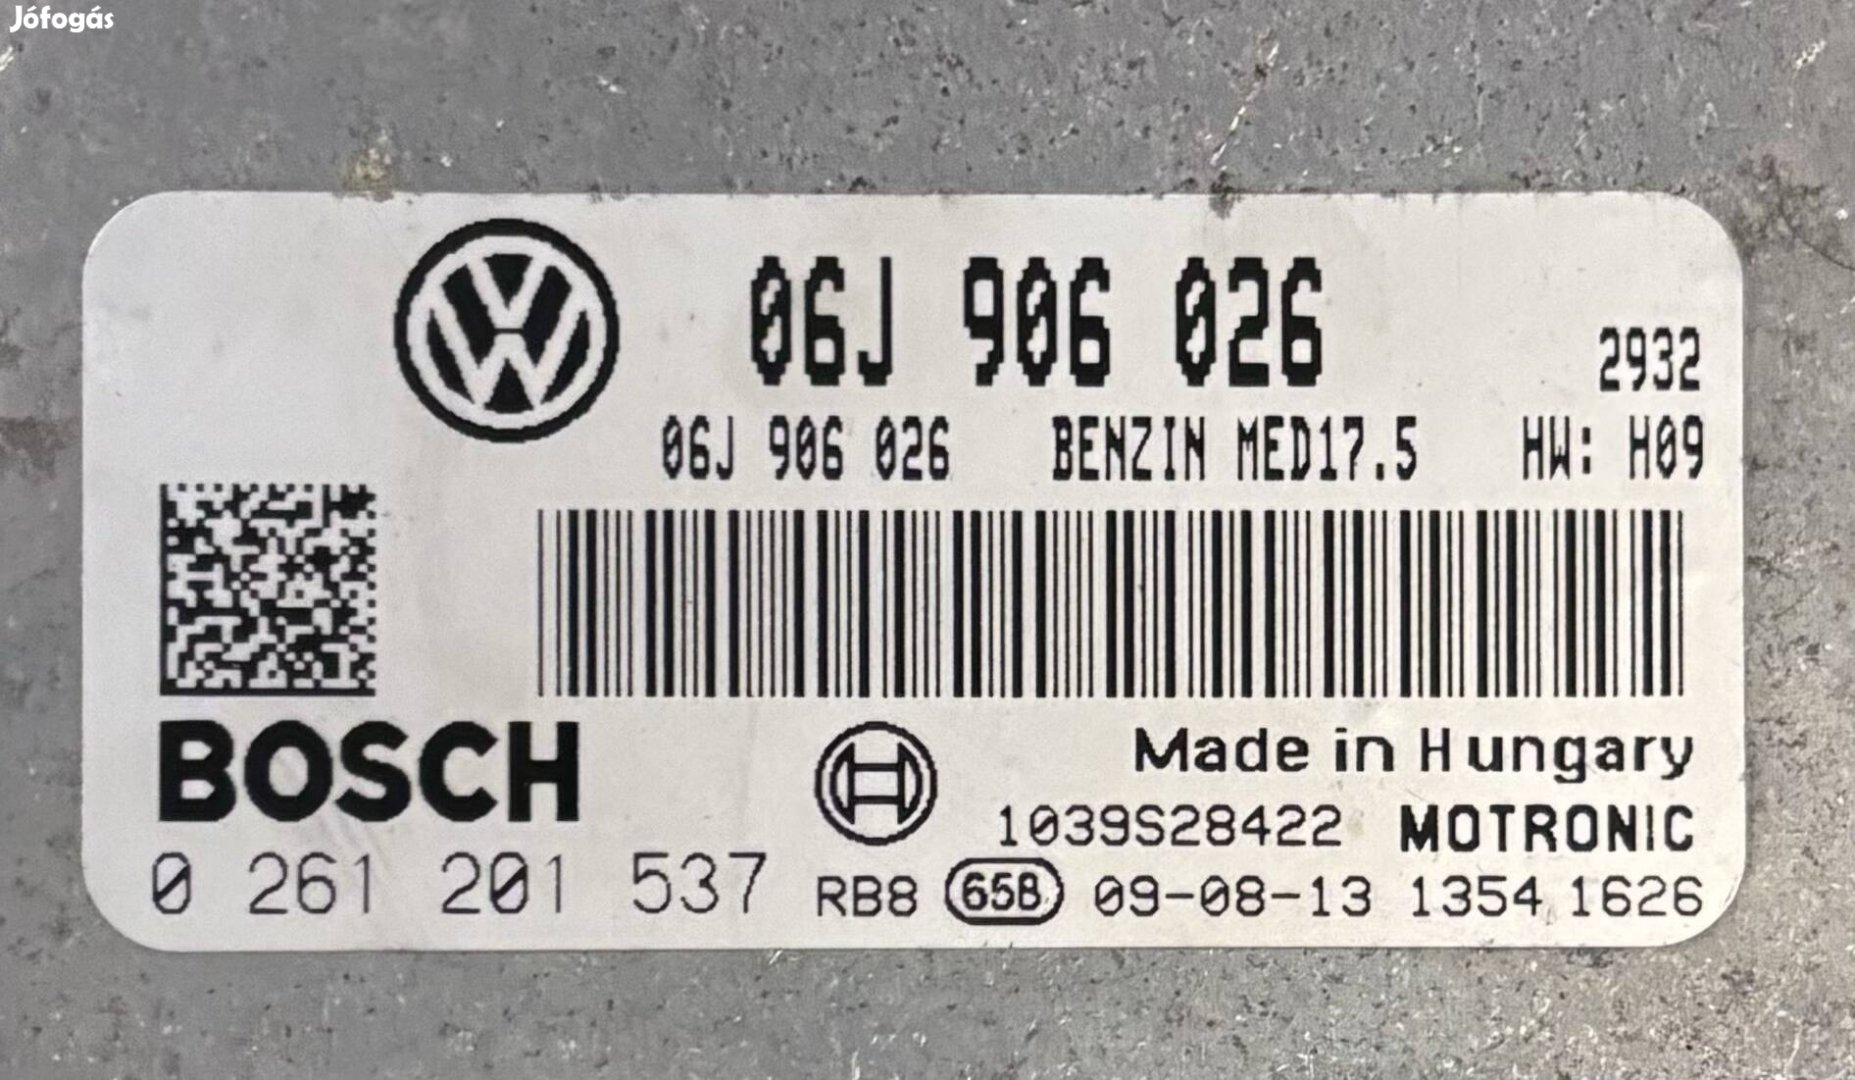 Keresek: VW Passat ECU-t keresek